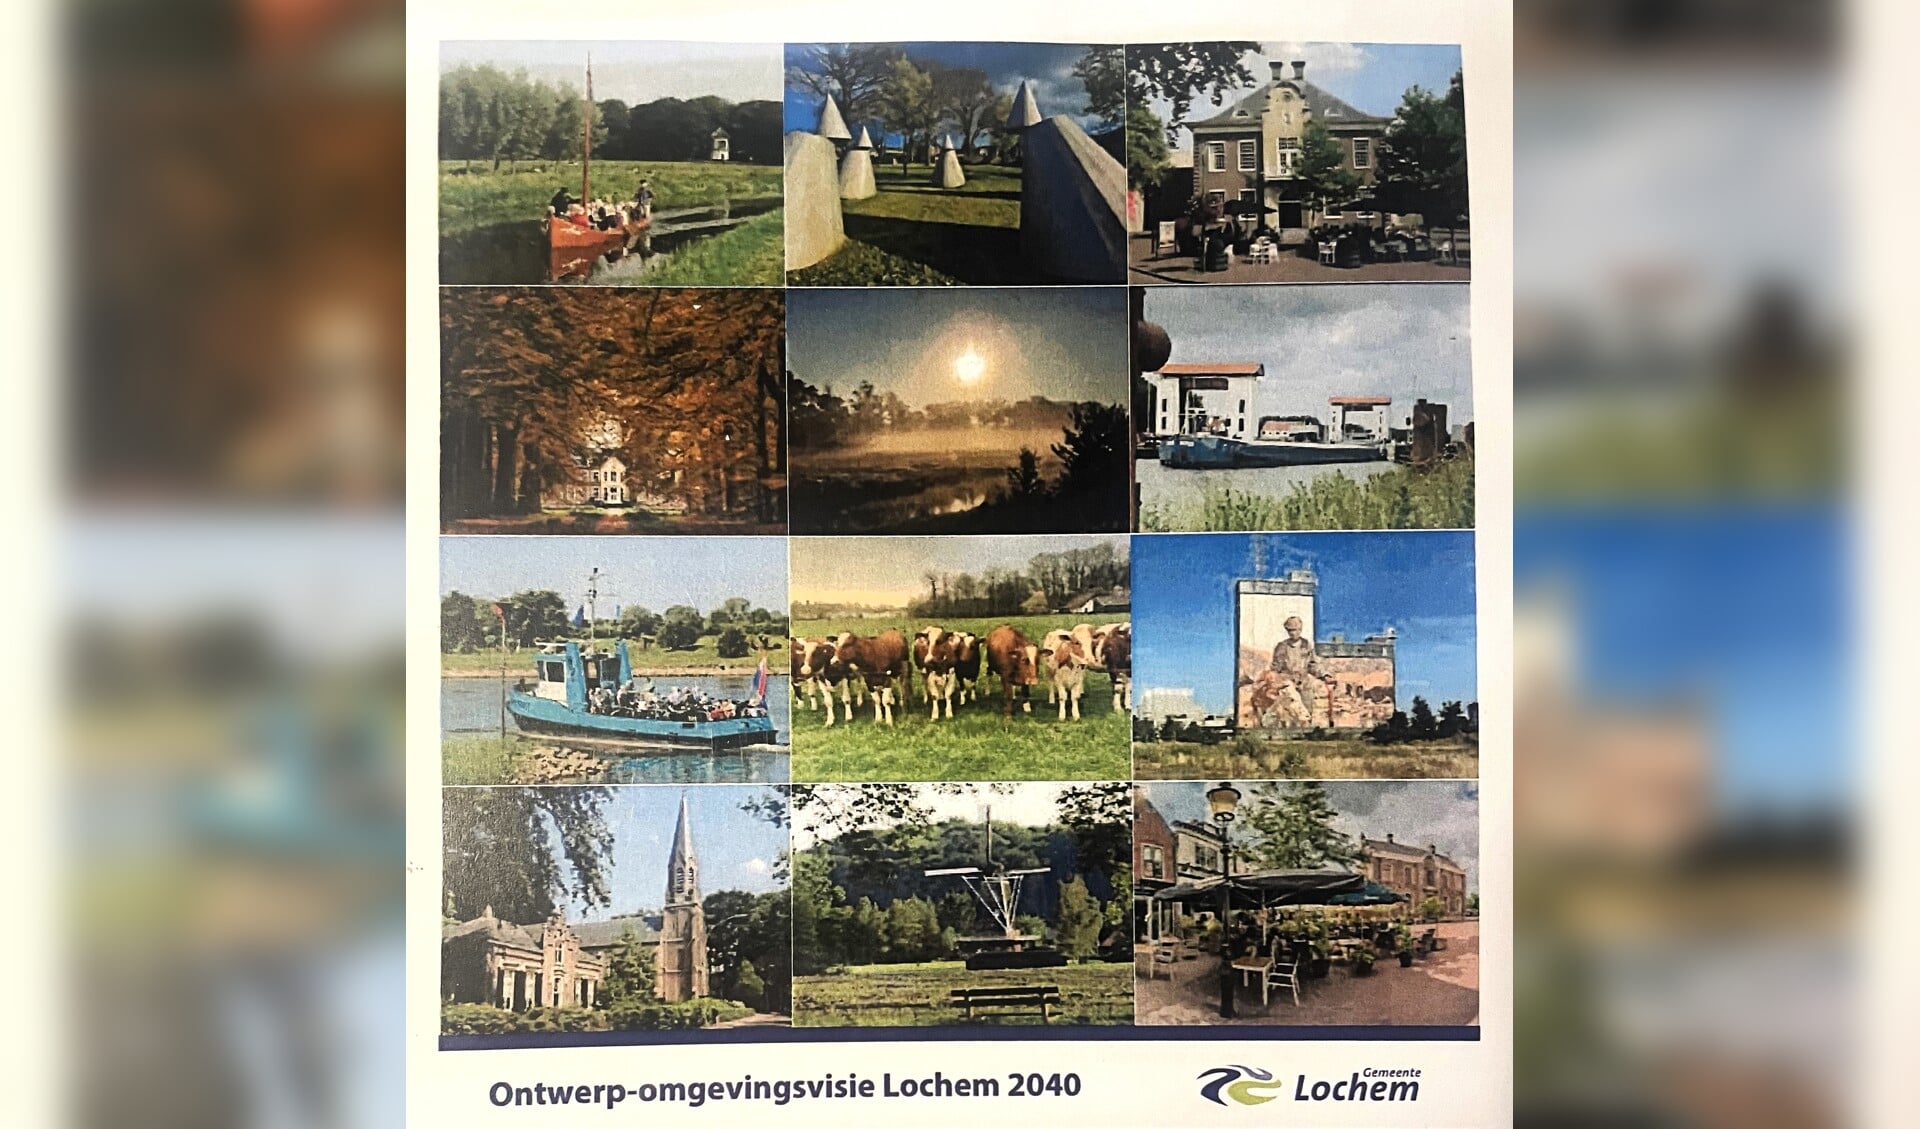 Deel van de cover van de ontwept-omgevingsvisie van de gemeente Lochem.